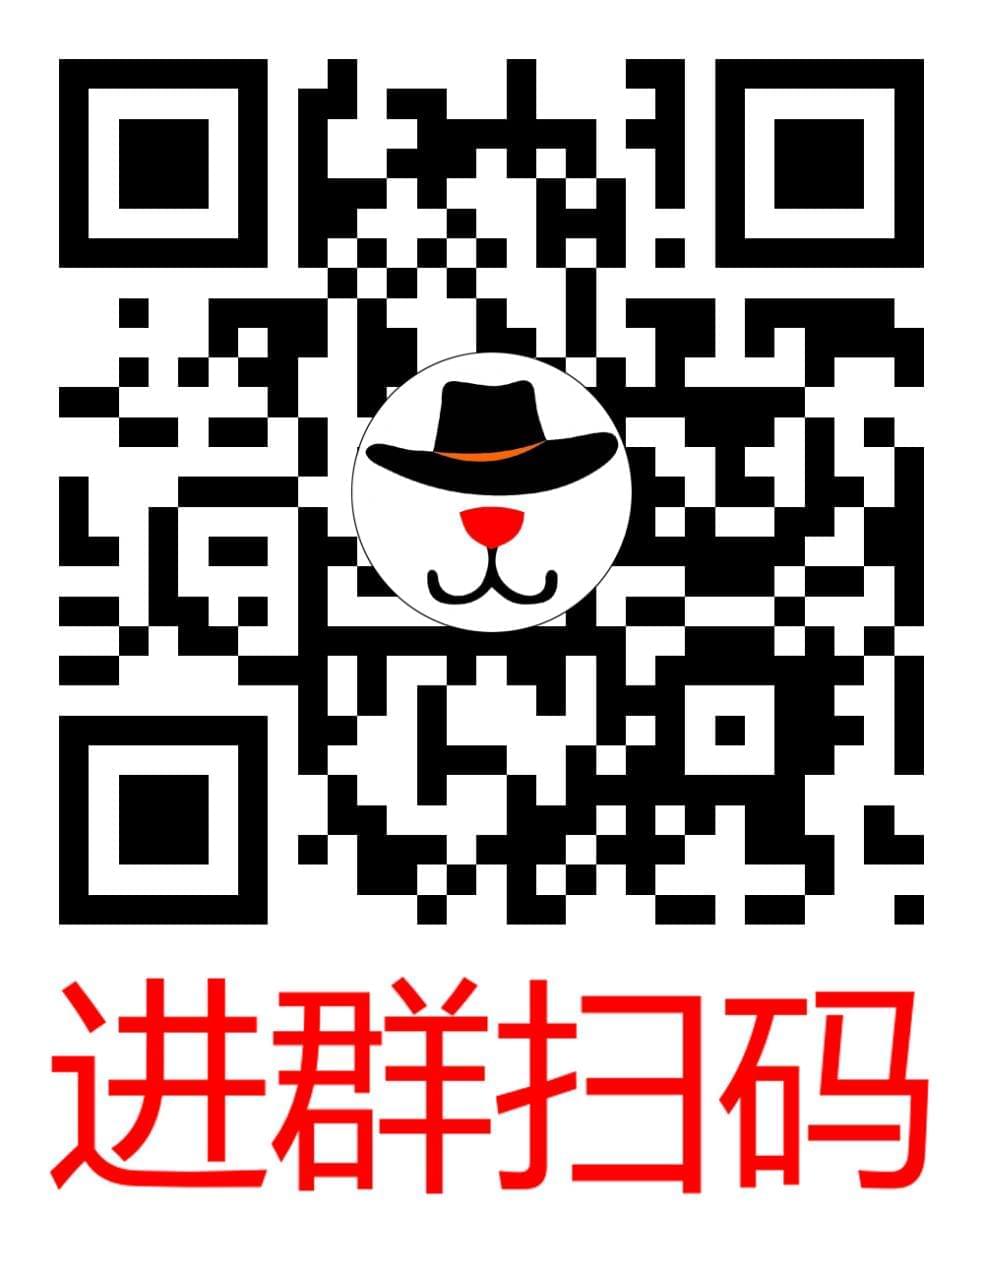 《猫愿三角恋》百度网盘下载6841,猫愿三角恋,三角,三角恋,百度,百度网